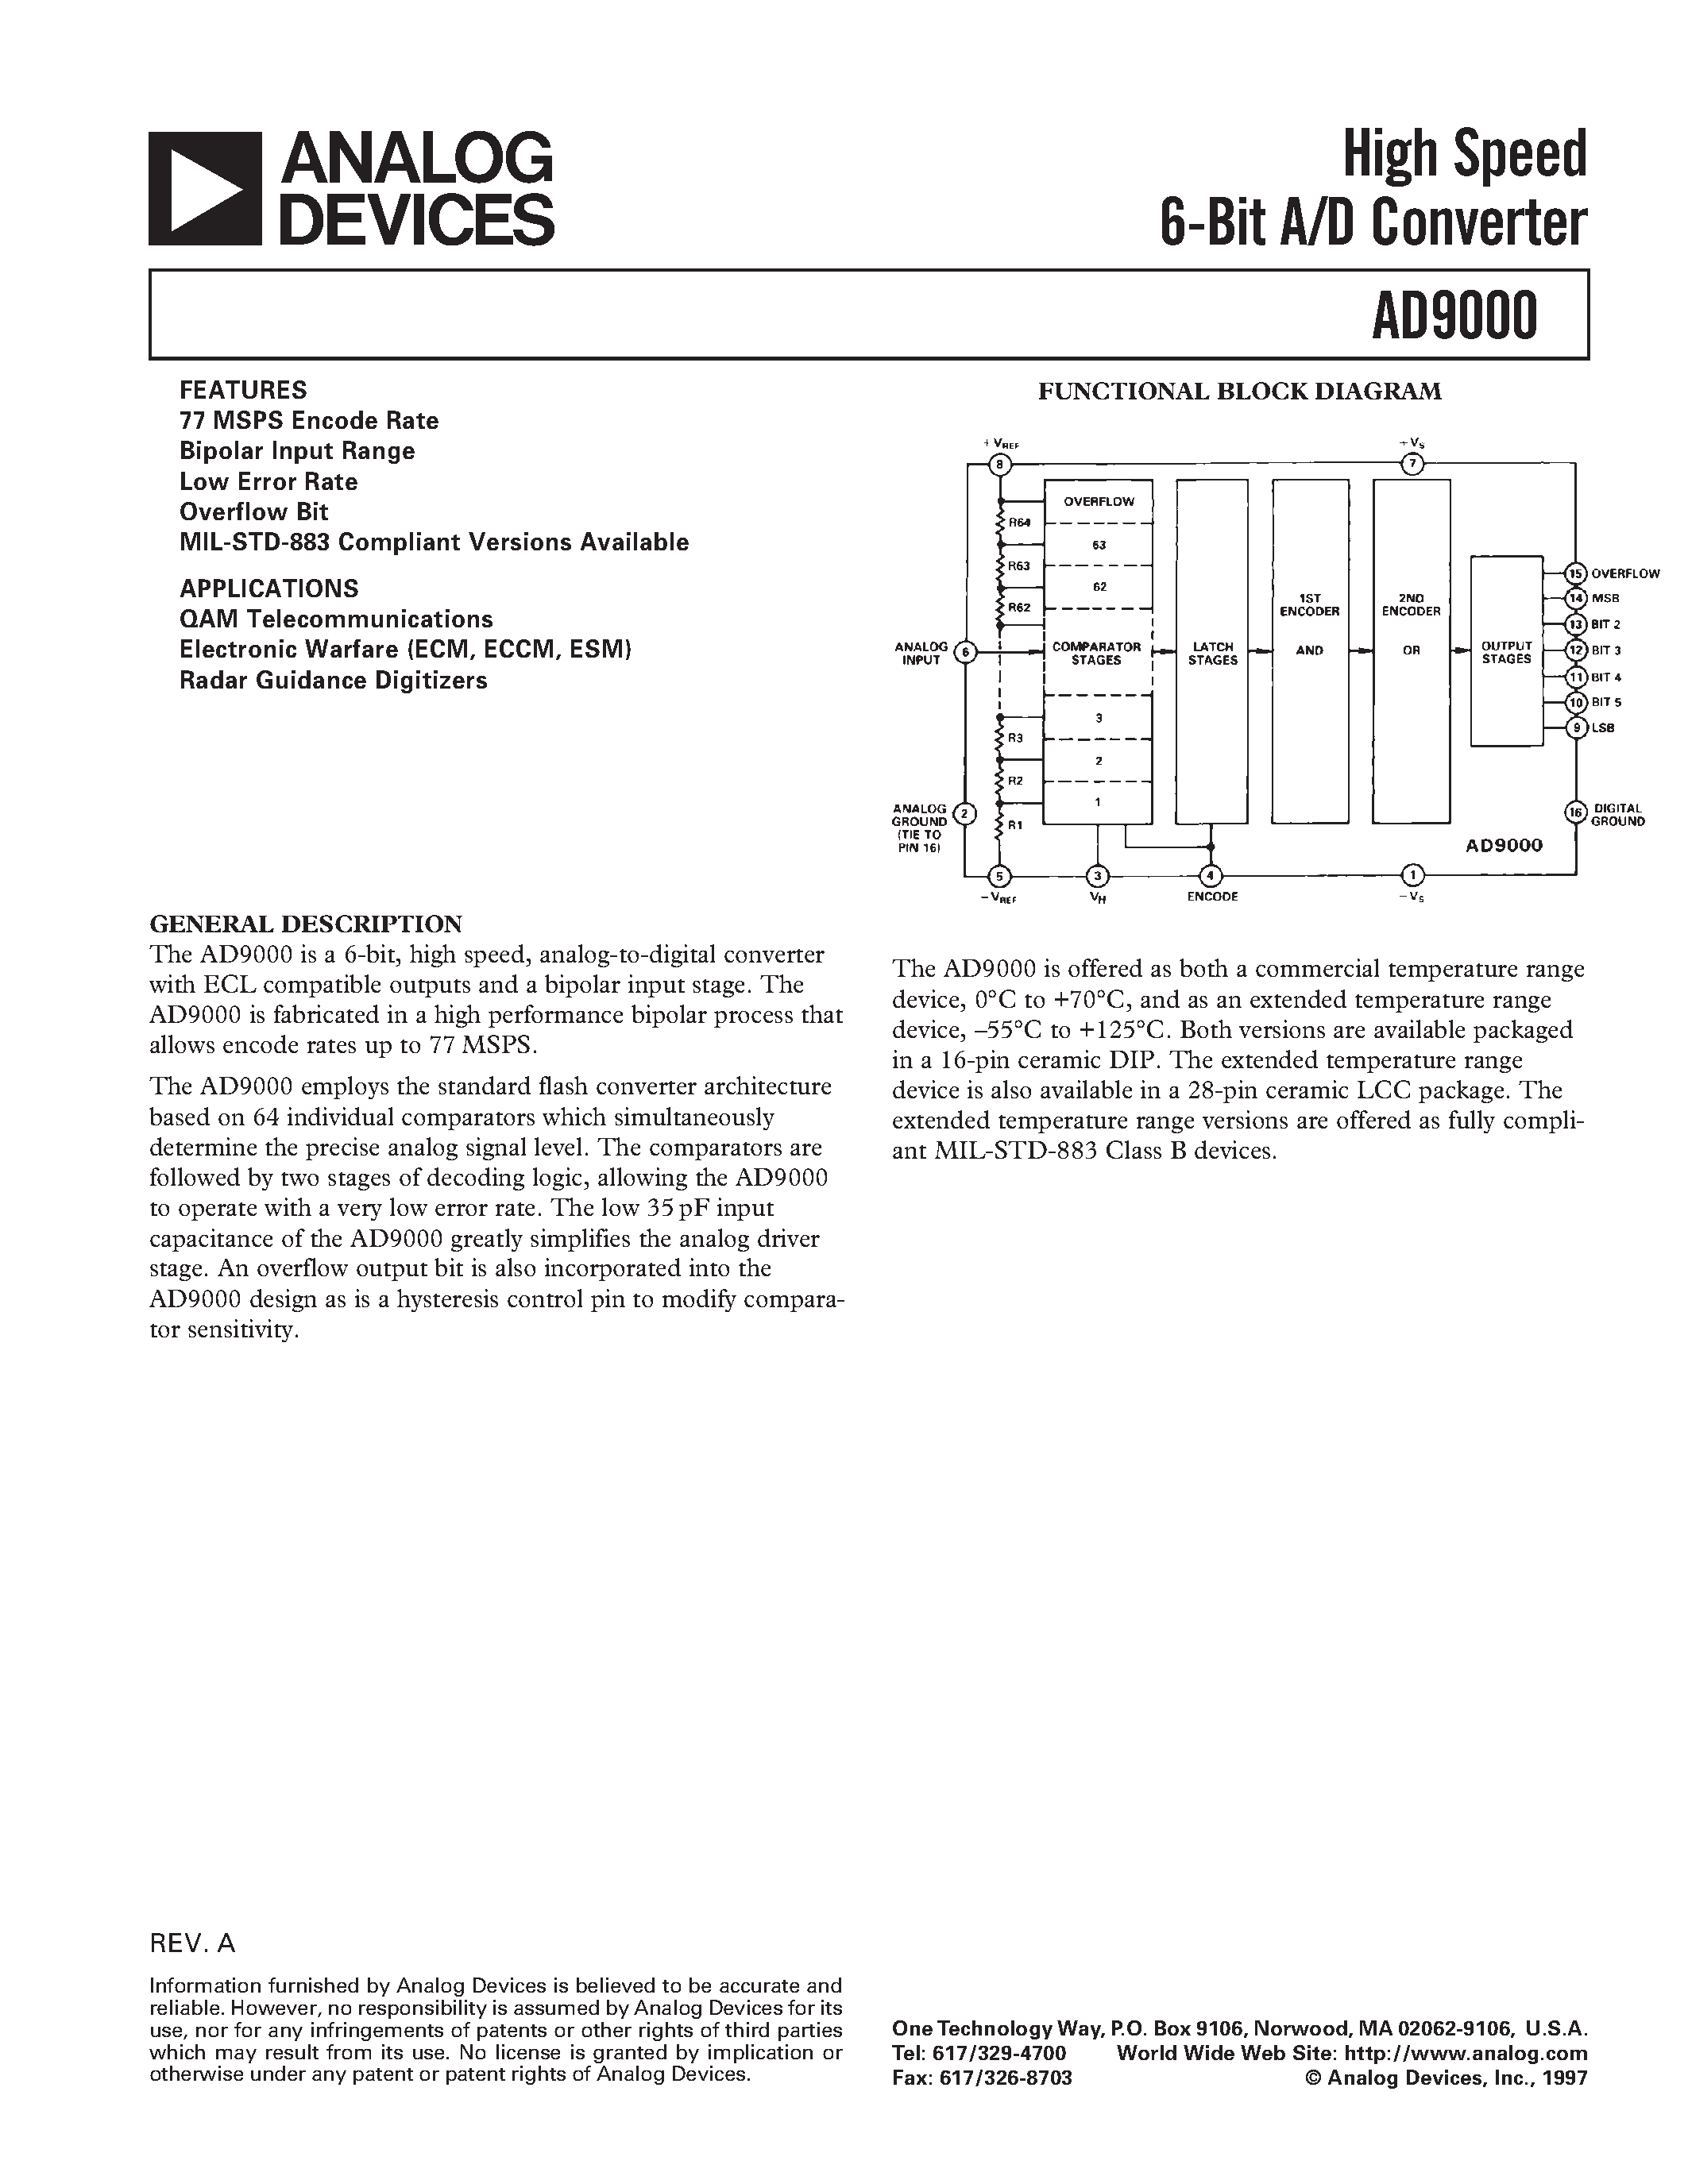 Даташит AD9000JD - High Speed 6-Bit A/D Converter страница 1